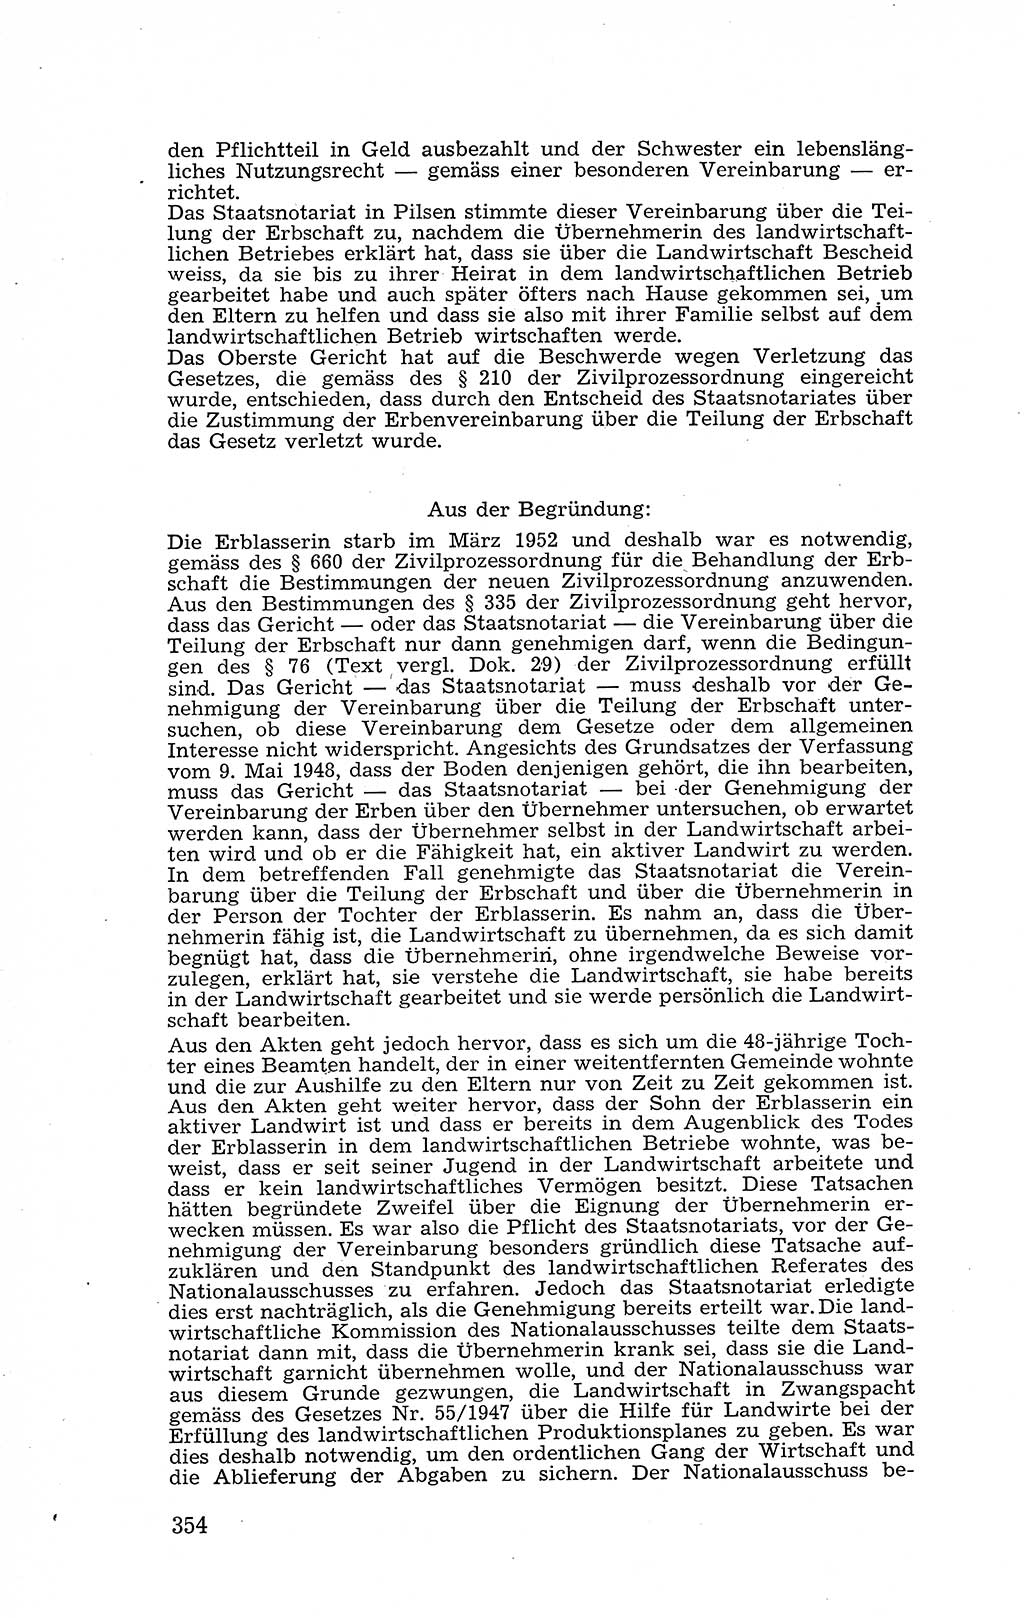 Recht in Fesseln, Dokumente, Internationale Juristen-Kommission [Bundesrepublik Deutschland (BRD)] 1955, Seite 354 (R. Dok. IJK BRD 1955, S. 354)